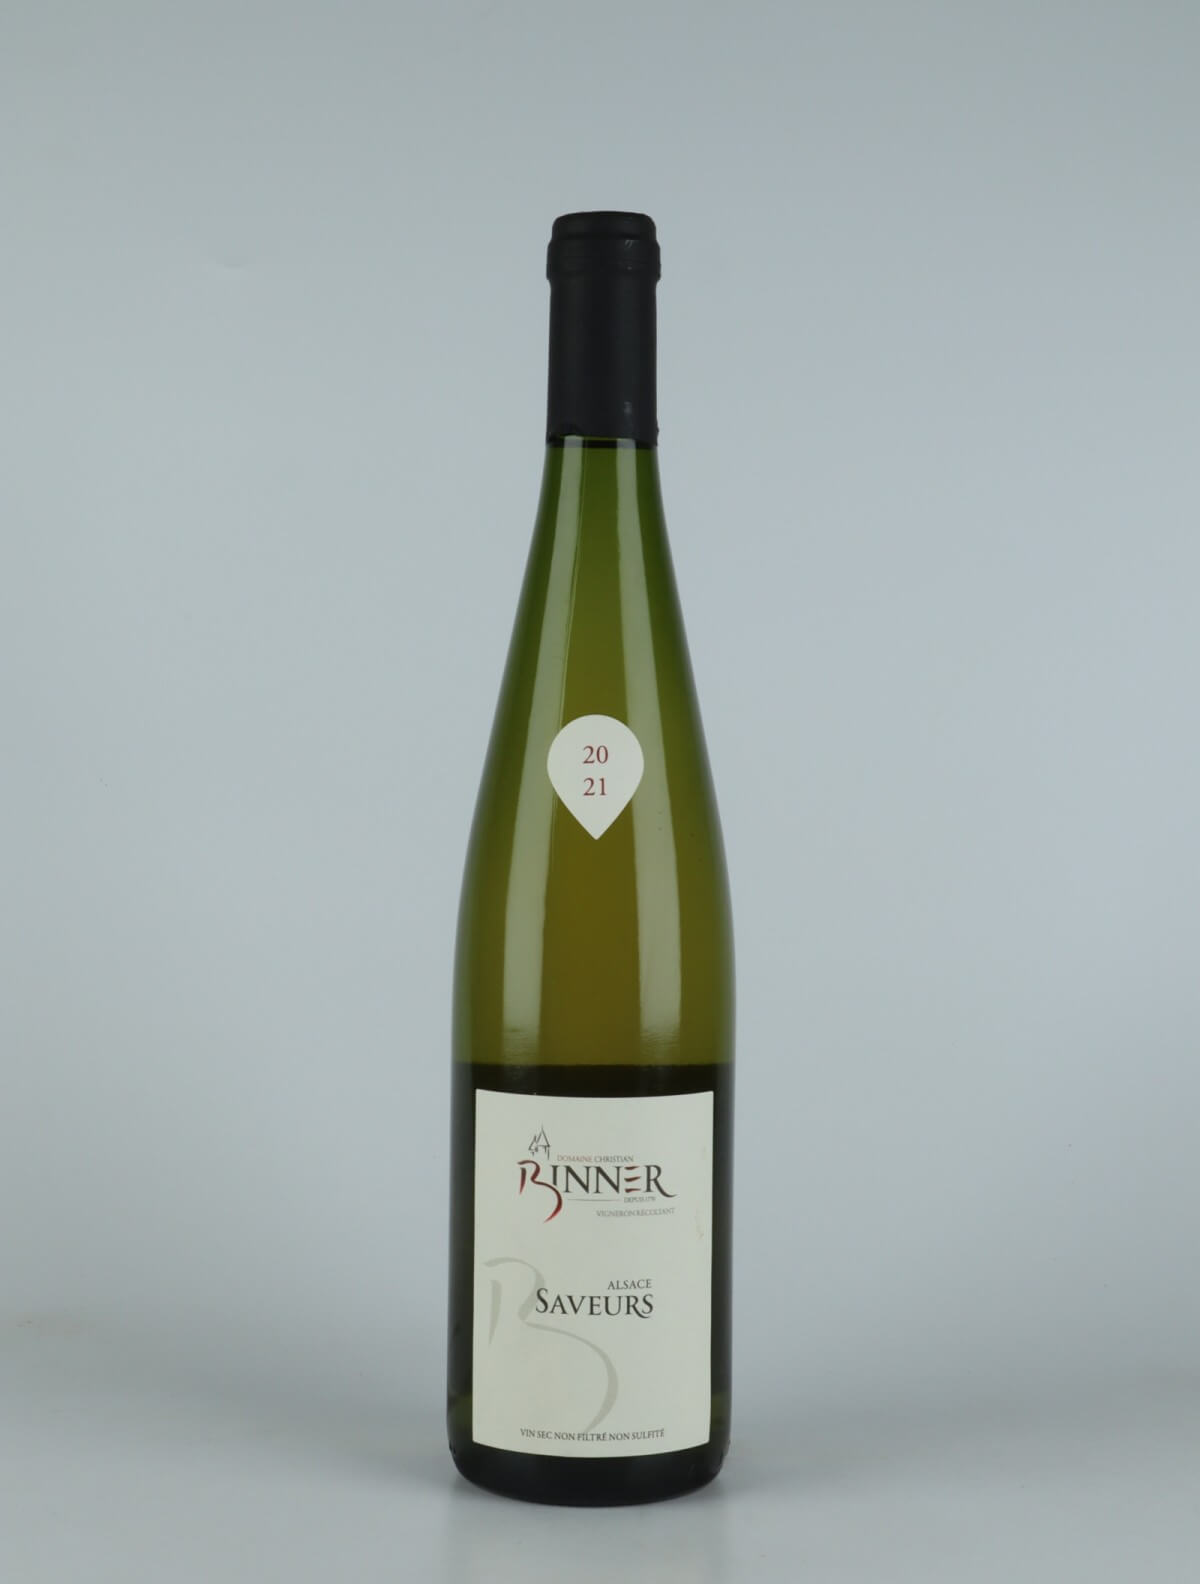 A bottle N.V. Saveurs (20/21) White wine from Domaine Christian Binner, Alsace in France